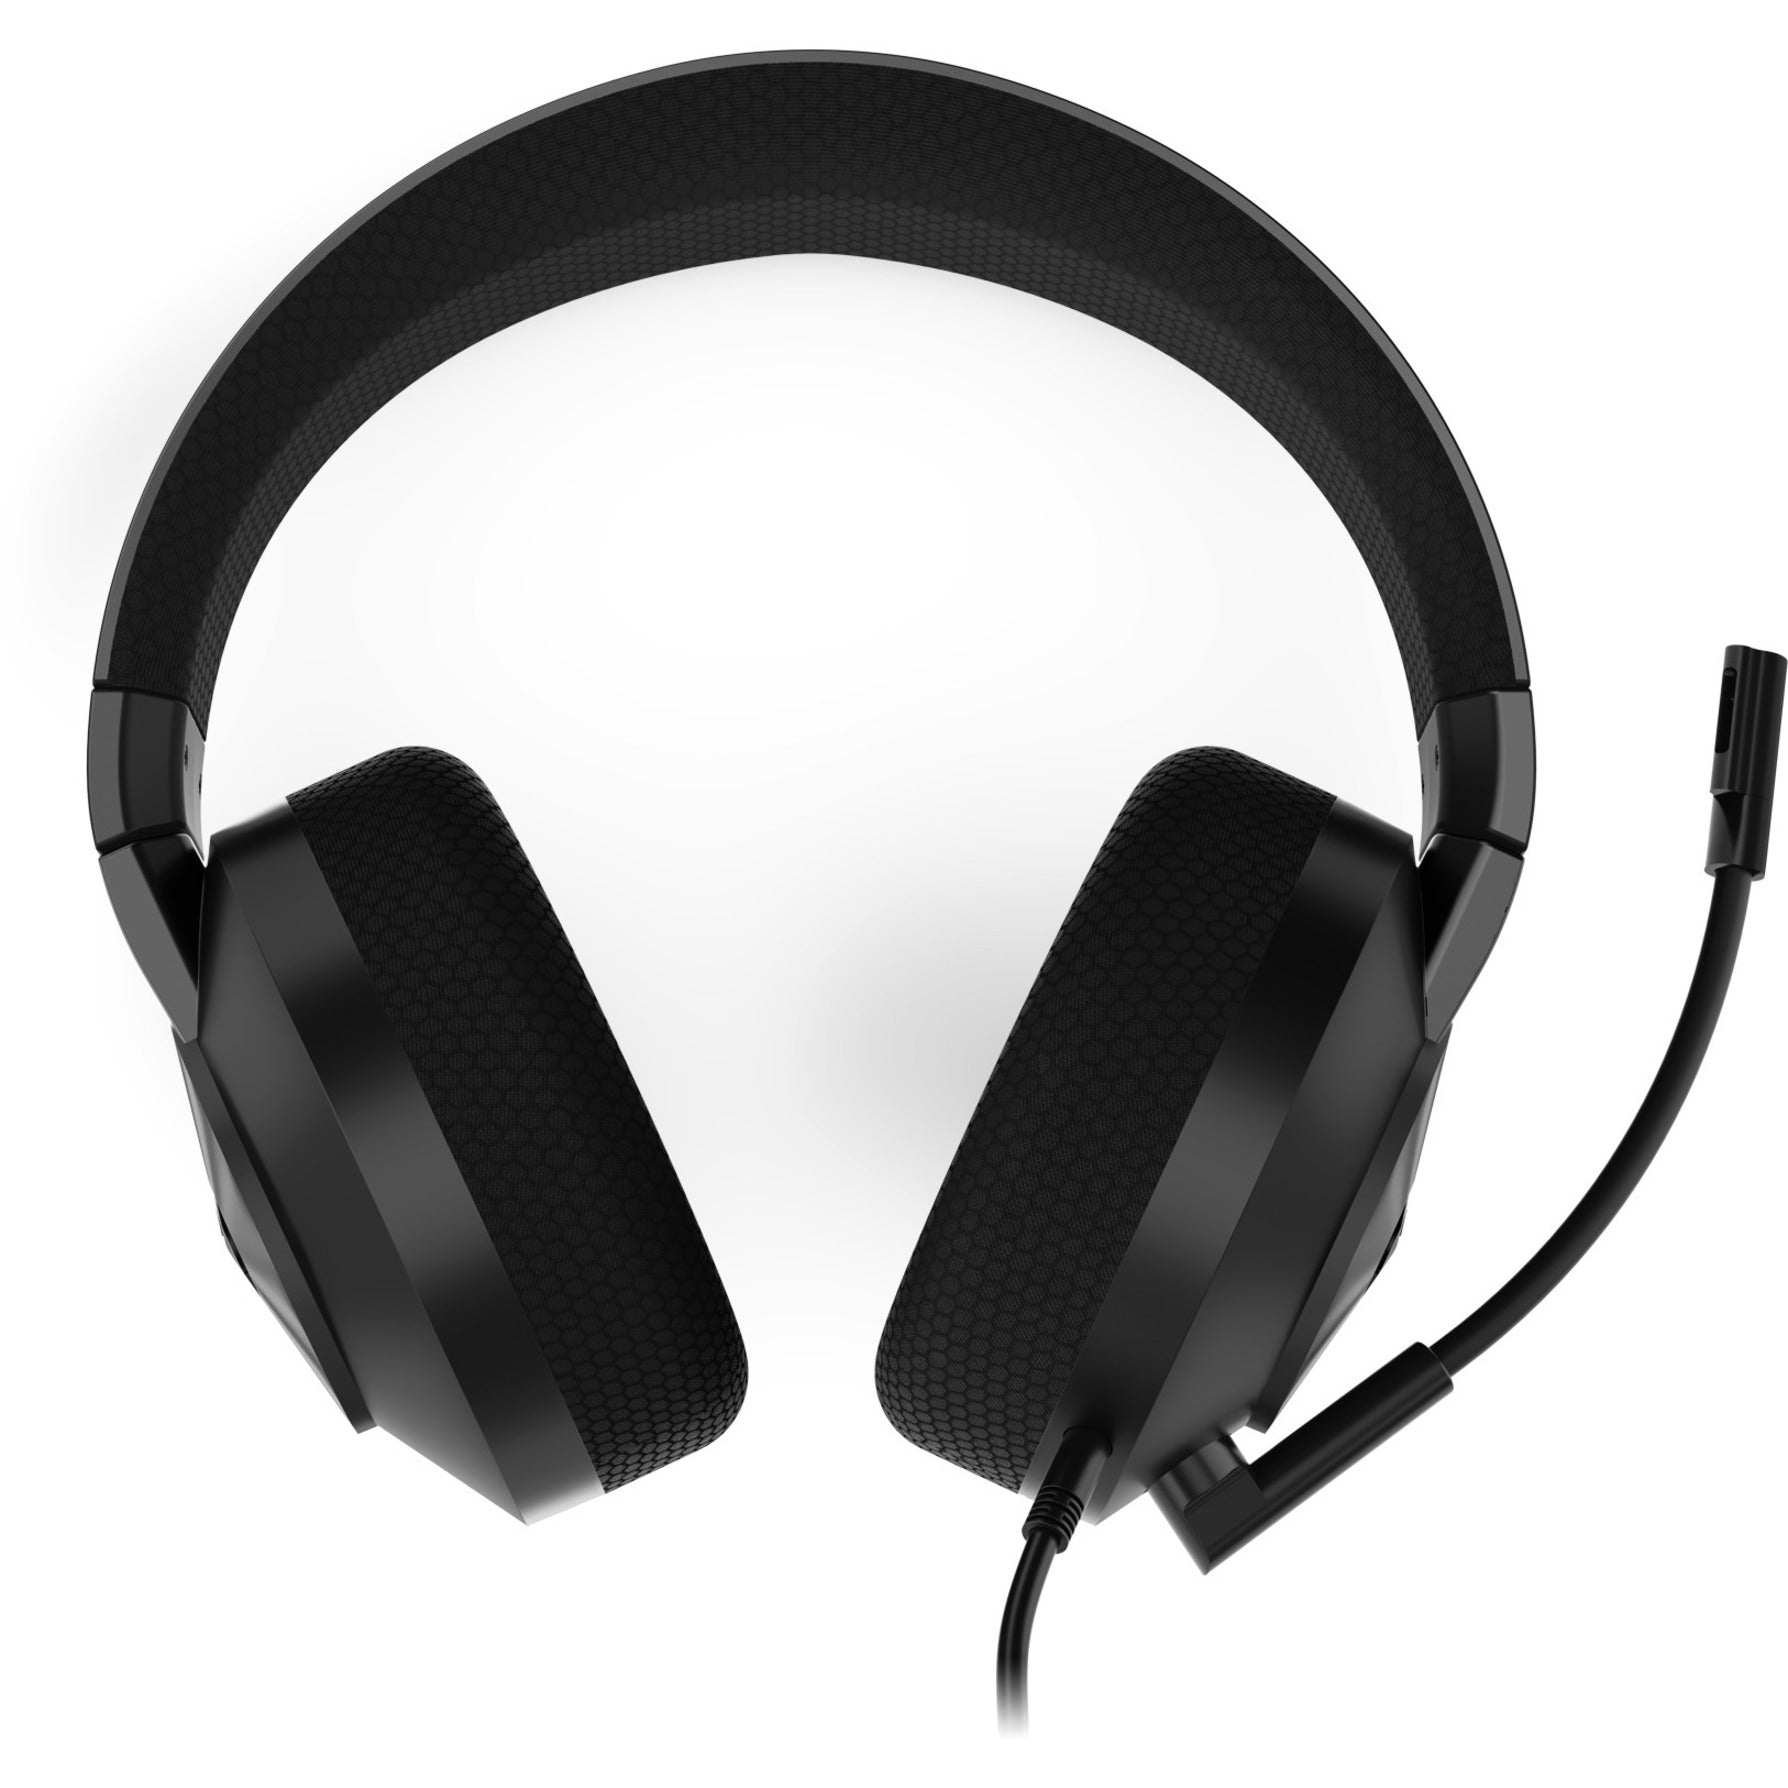 联想 GXD1B87065 军团 H200 游戏耳机，头戴式双耳立体声游戏耳机带有降噪麦克风 联想品牌名称： 联想